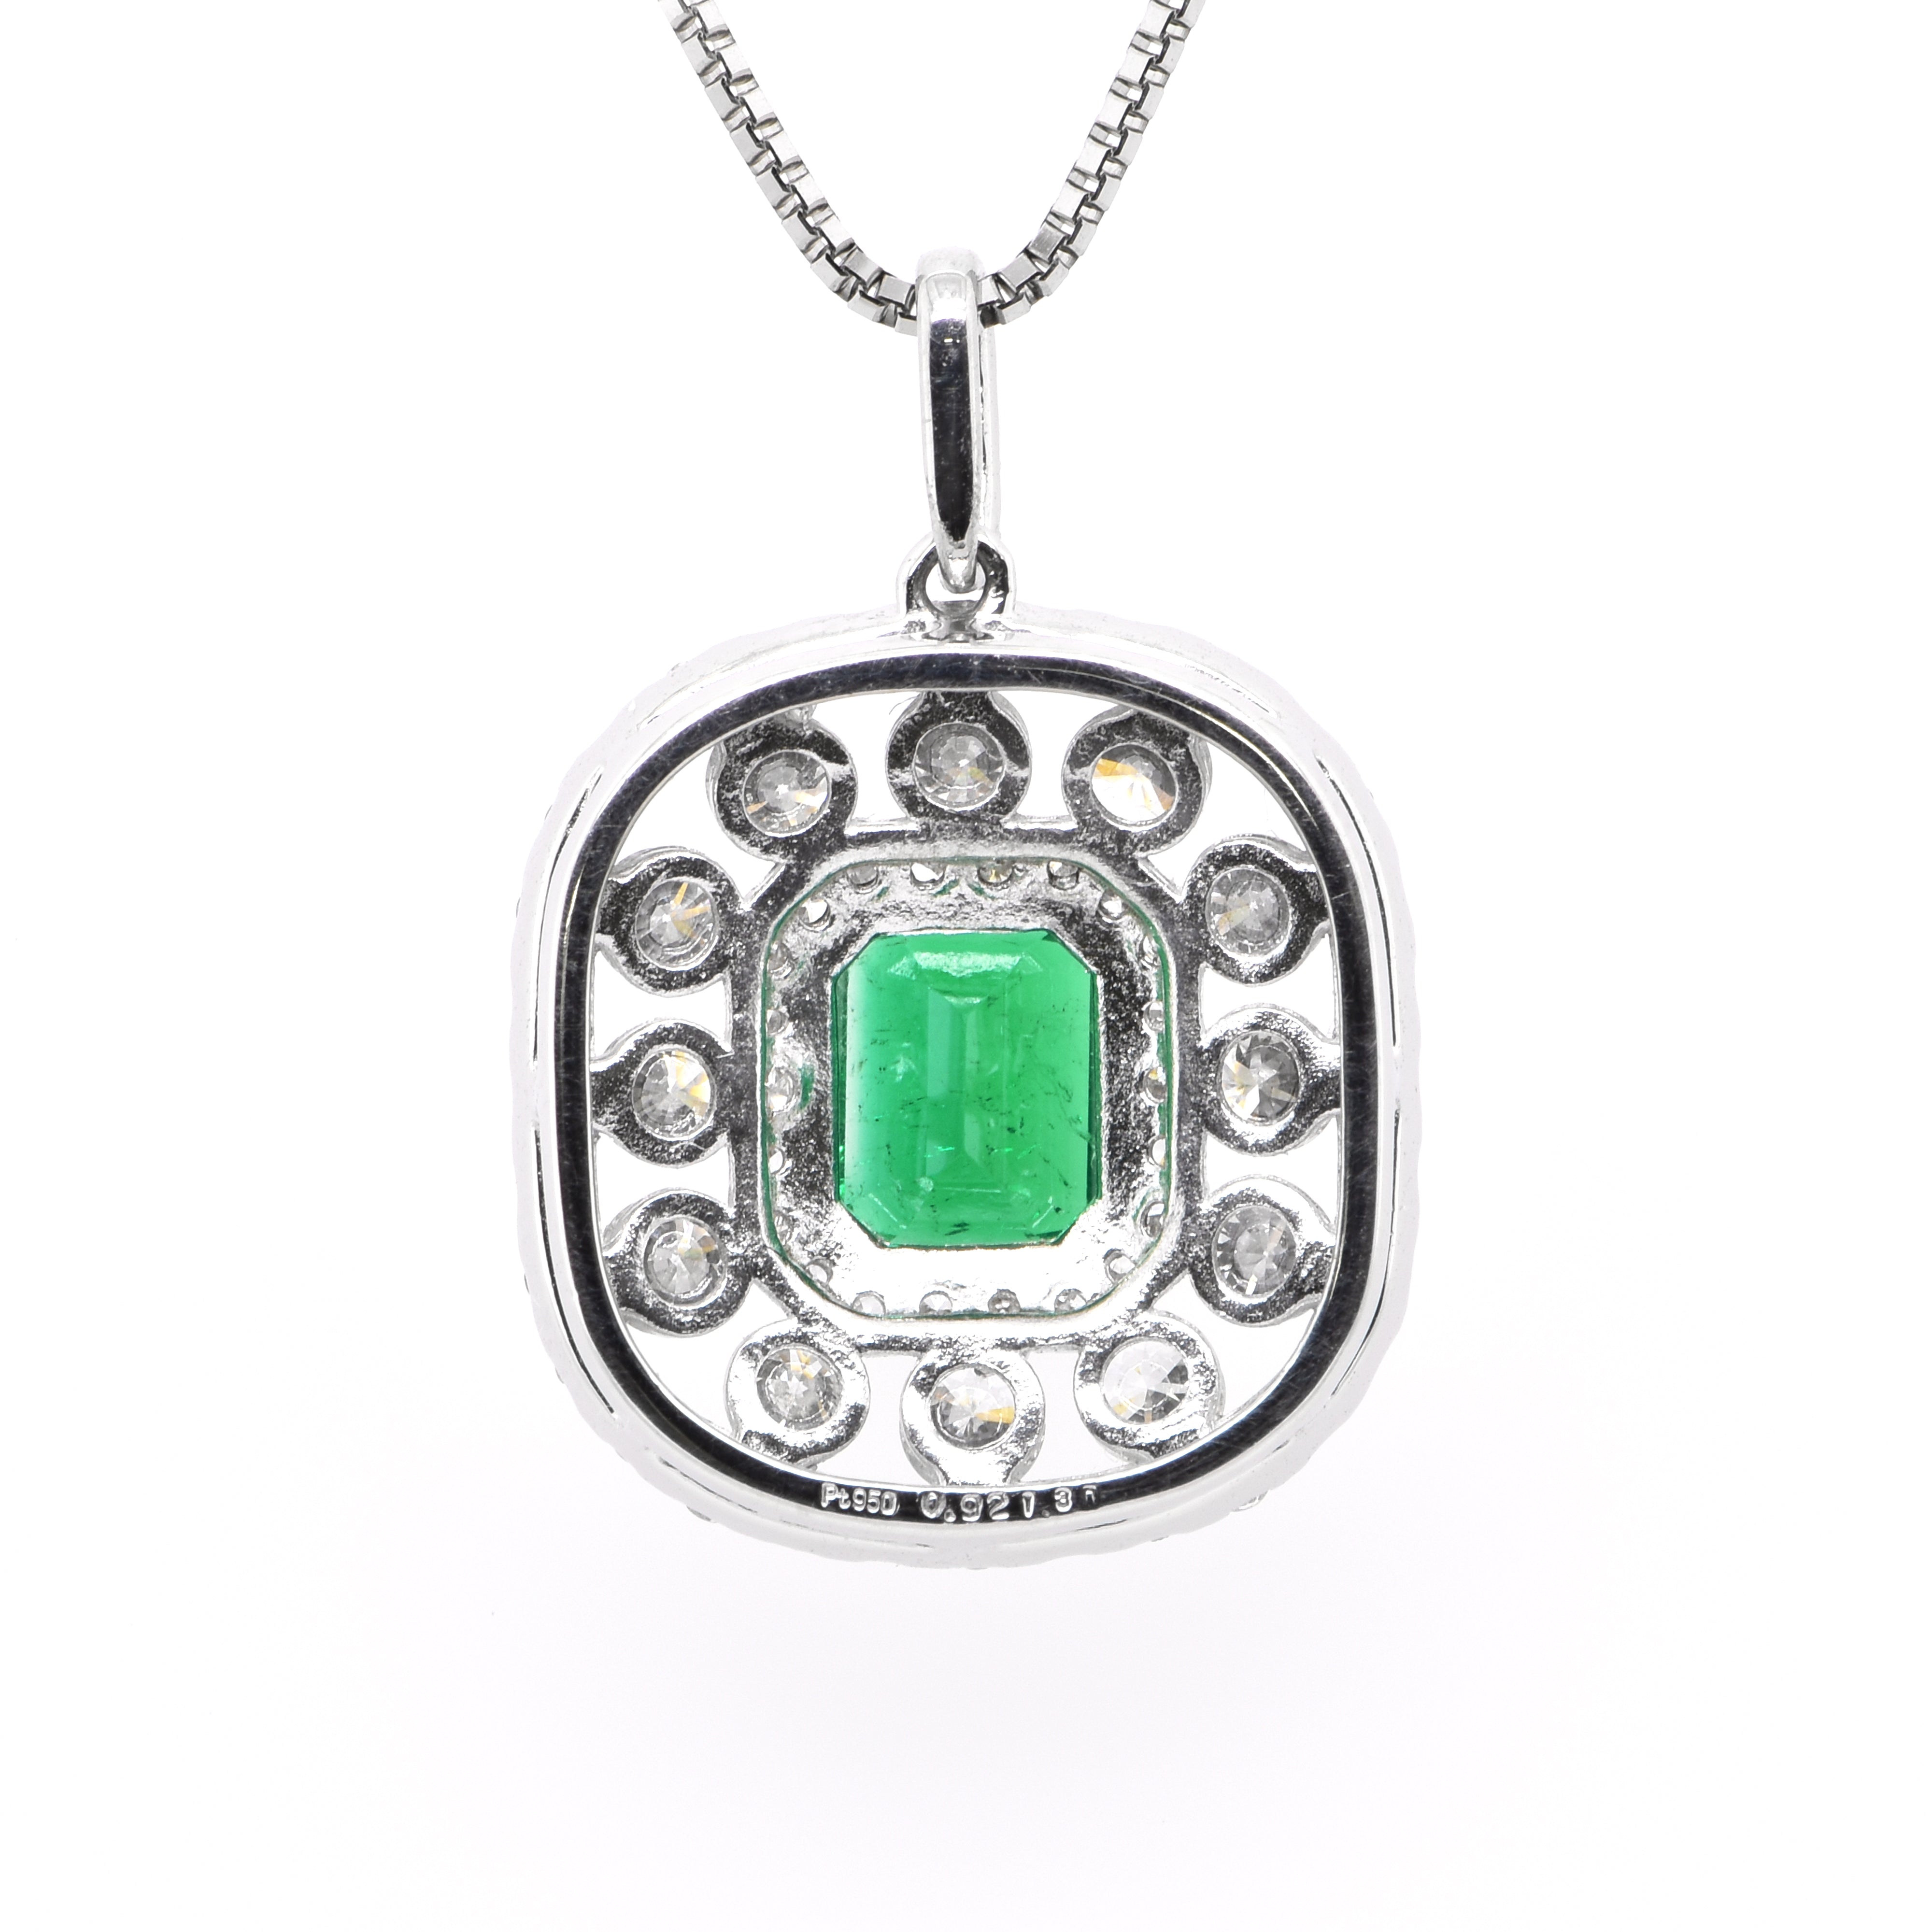 0.92 Carat Natural Emerald and Diamond Pendant set in Platinum